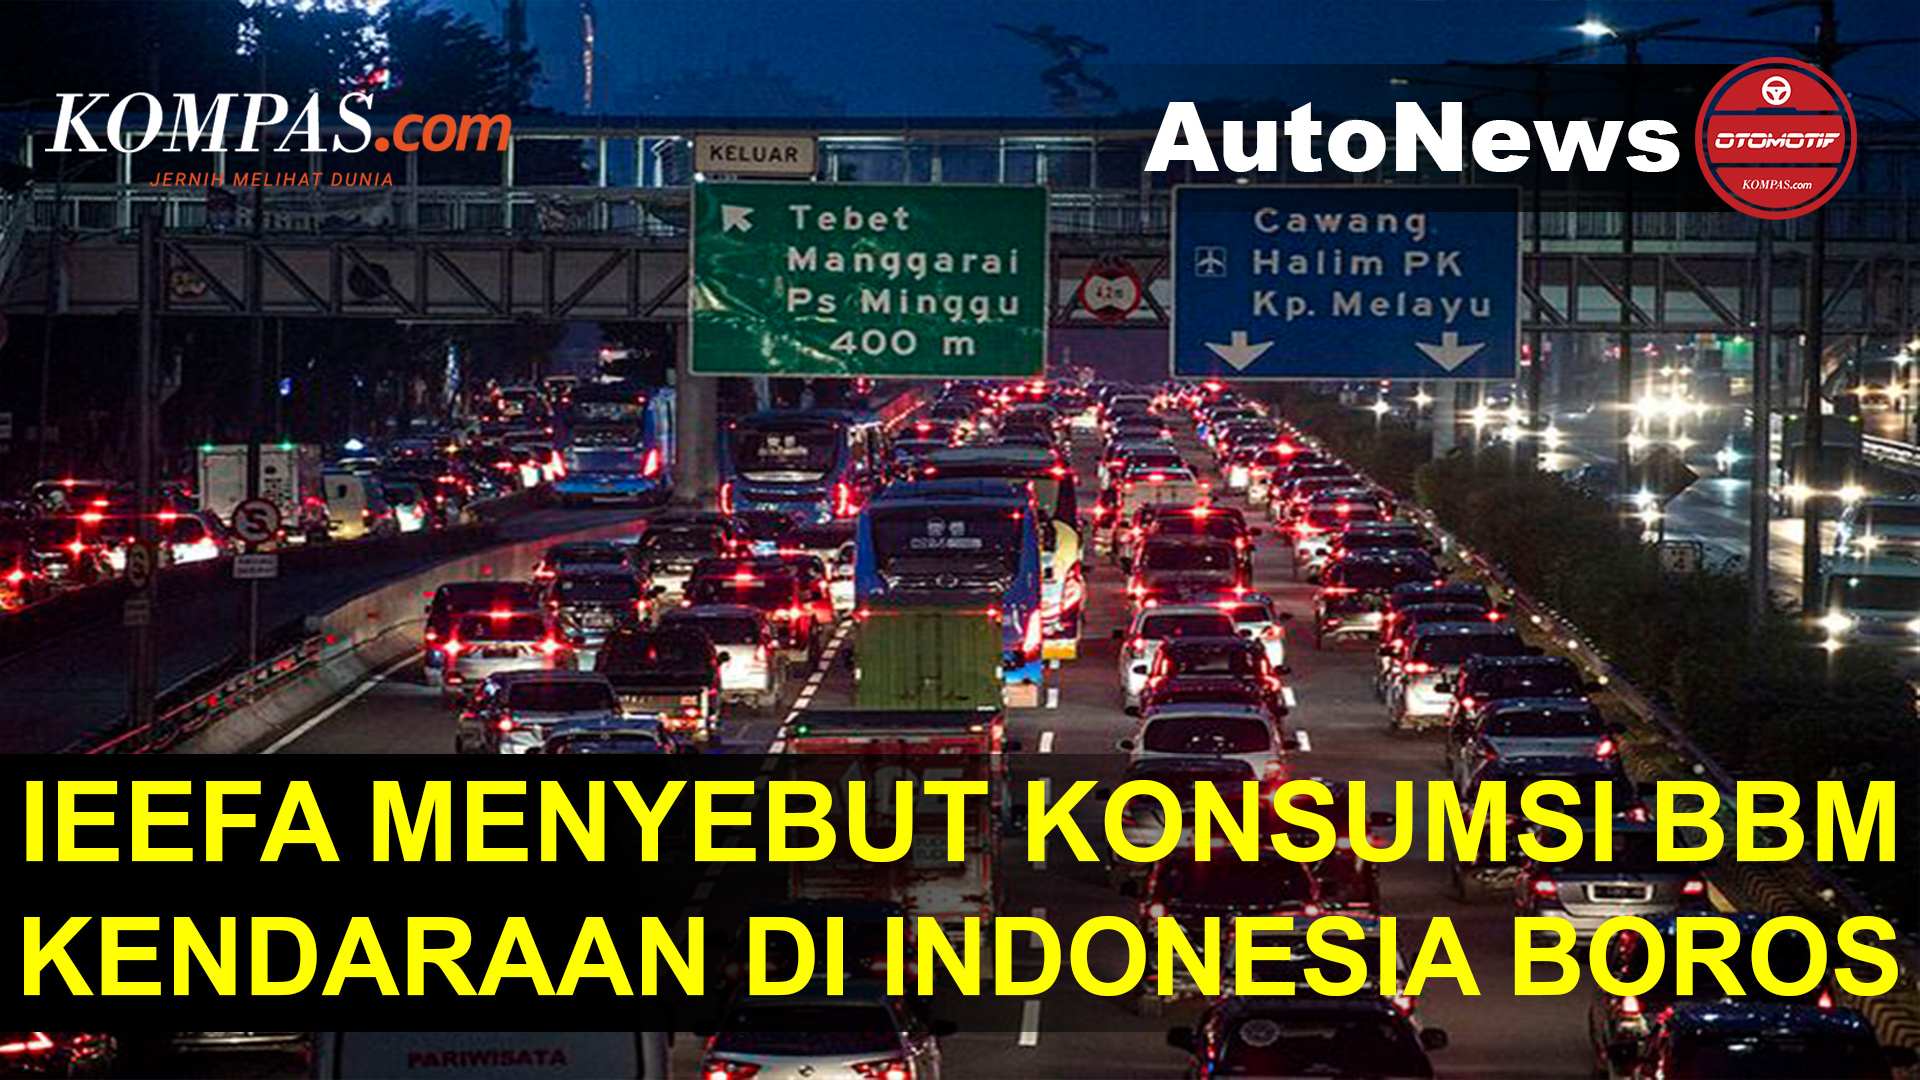 Konsumsi BBM Kendaraan Bermotor di Indonesia Disebut Sangat Boros